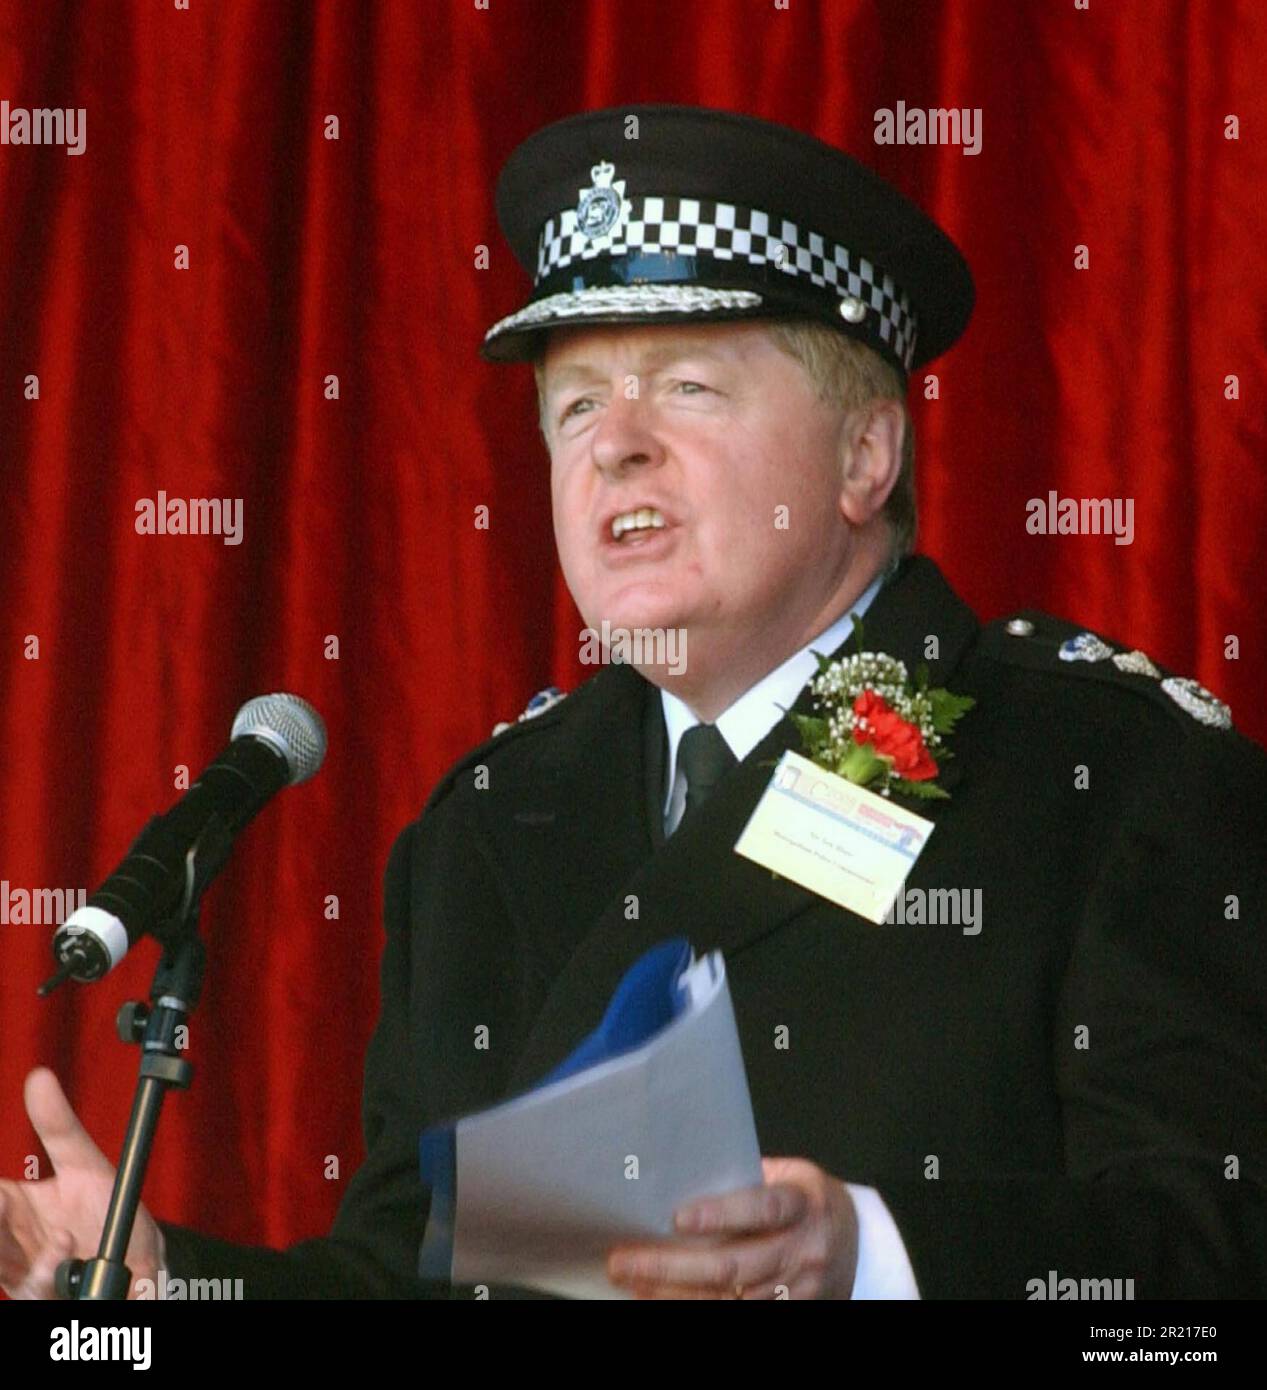 Il commissario metropolitano della polizia Sir Ian Blair alle celebrazioni del Capodanno cinese a Londra Foto Stock